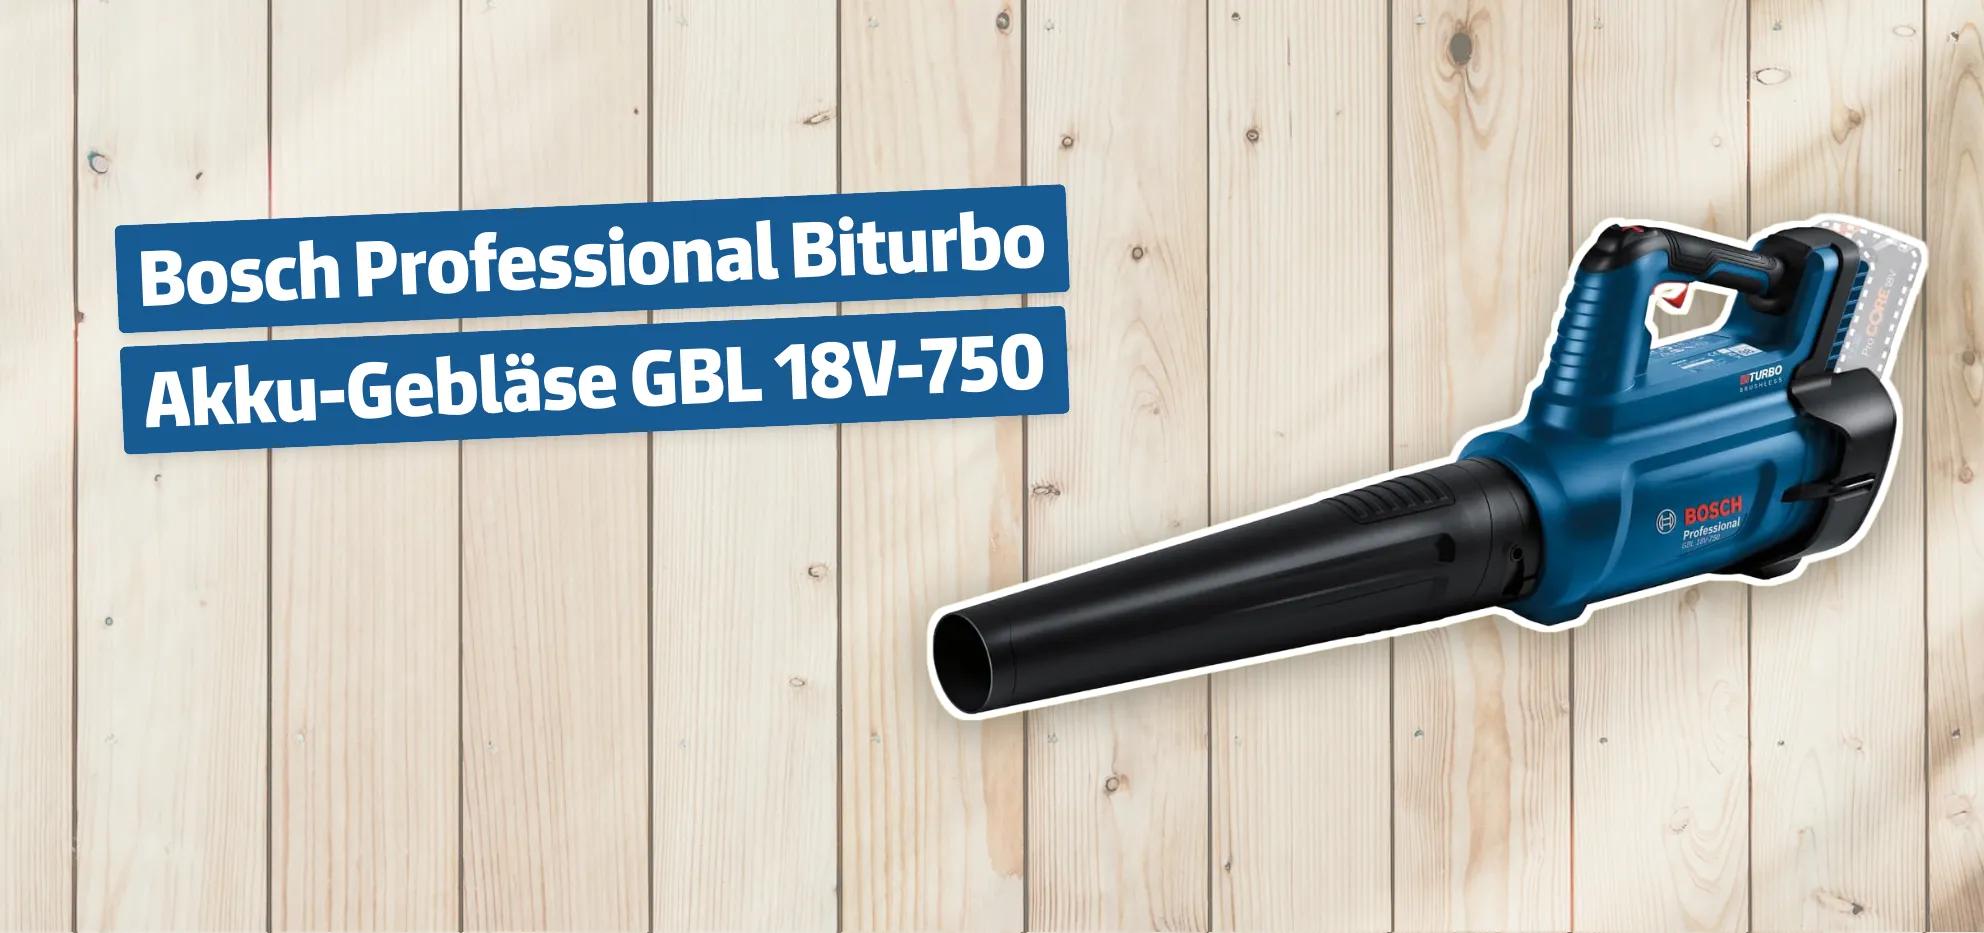 Bosch Professional Biturbo Akku-Gebläse GBL 18V-750